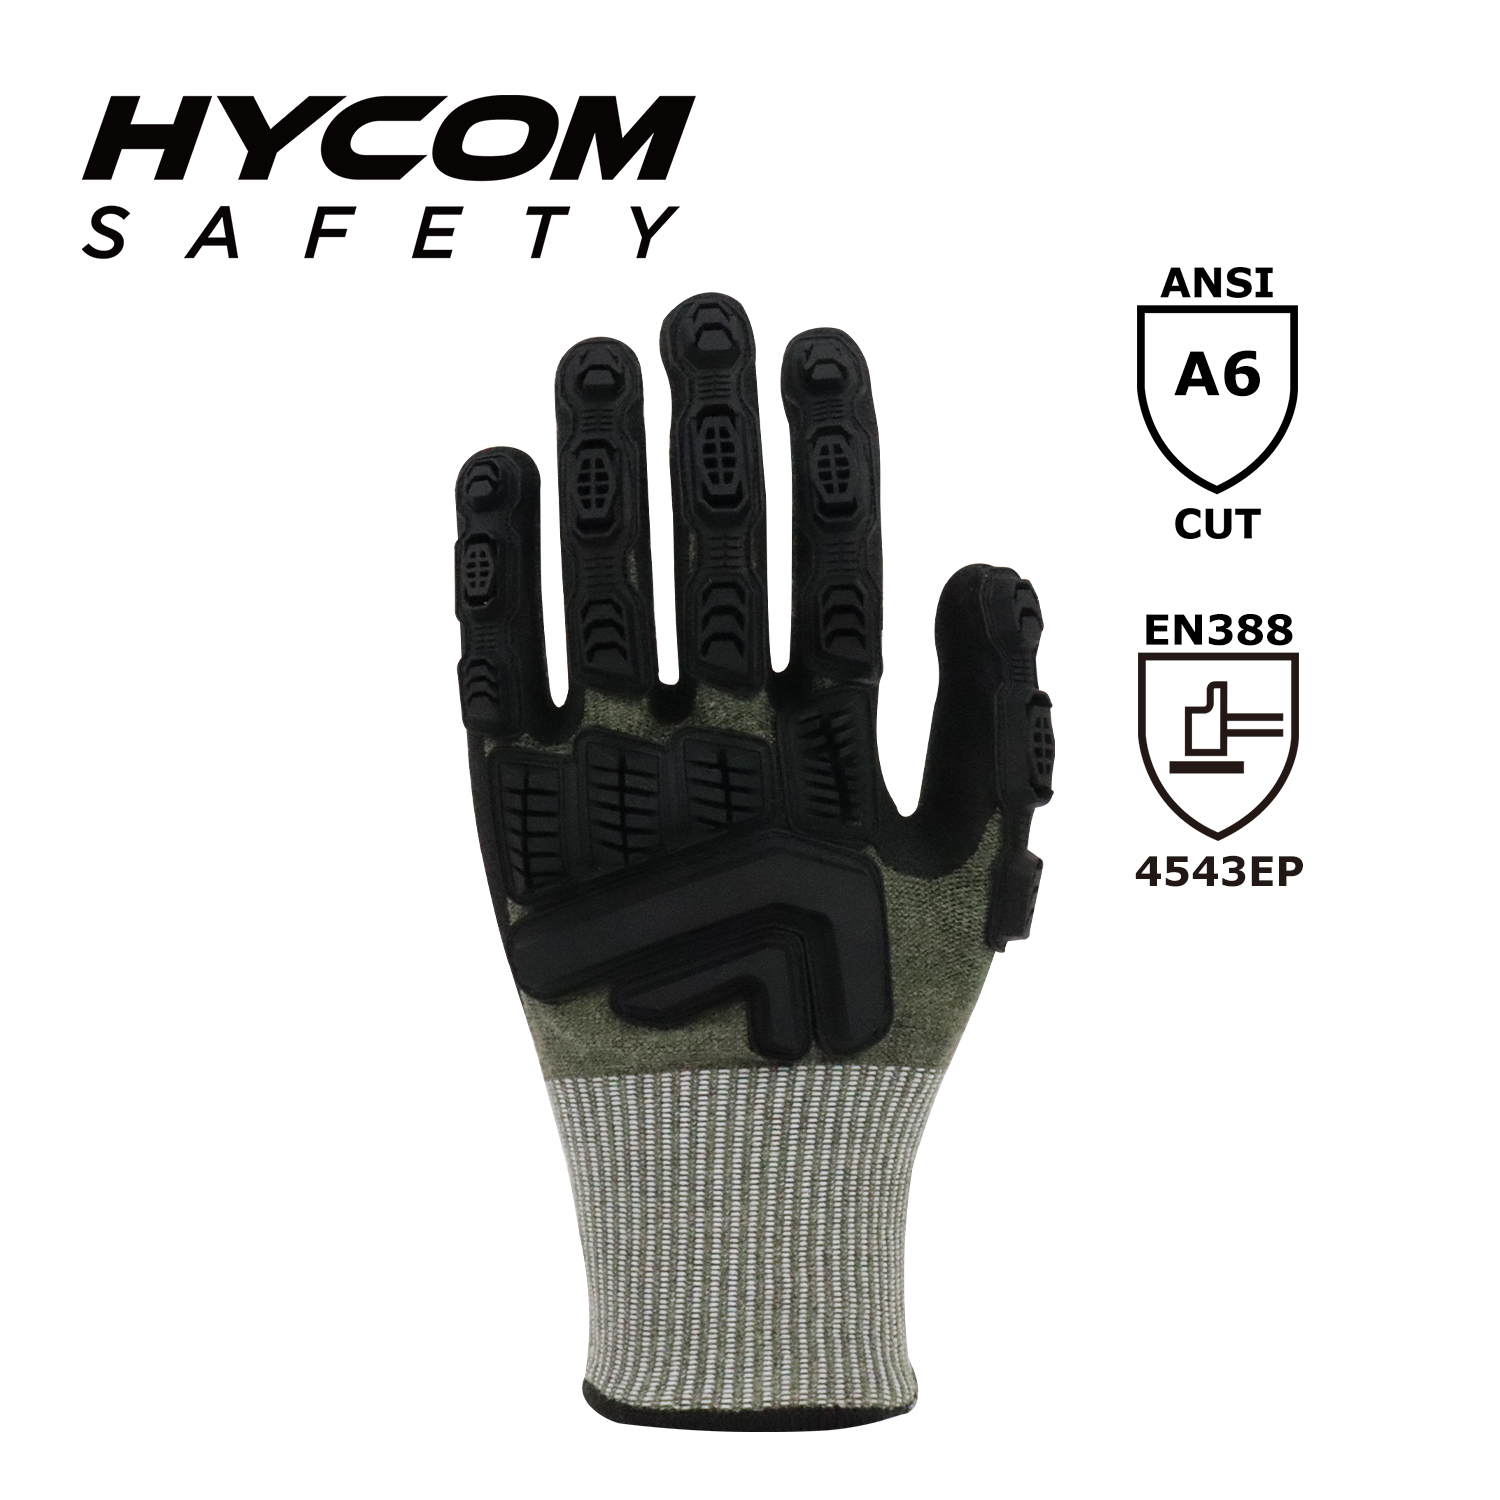 HYCOM Atemschnittfester Handschuh der Stufe 5 ANSI 6, beschichtet mit Sandy-Nitril- und TPR-Arbeitshandschuhen